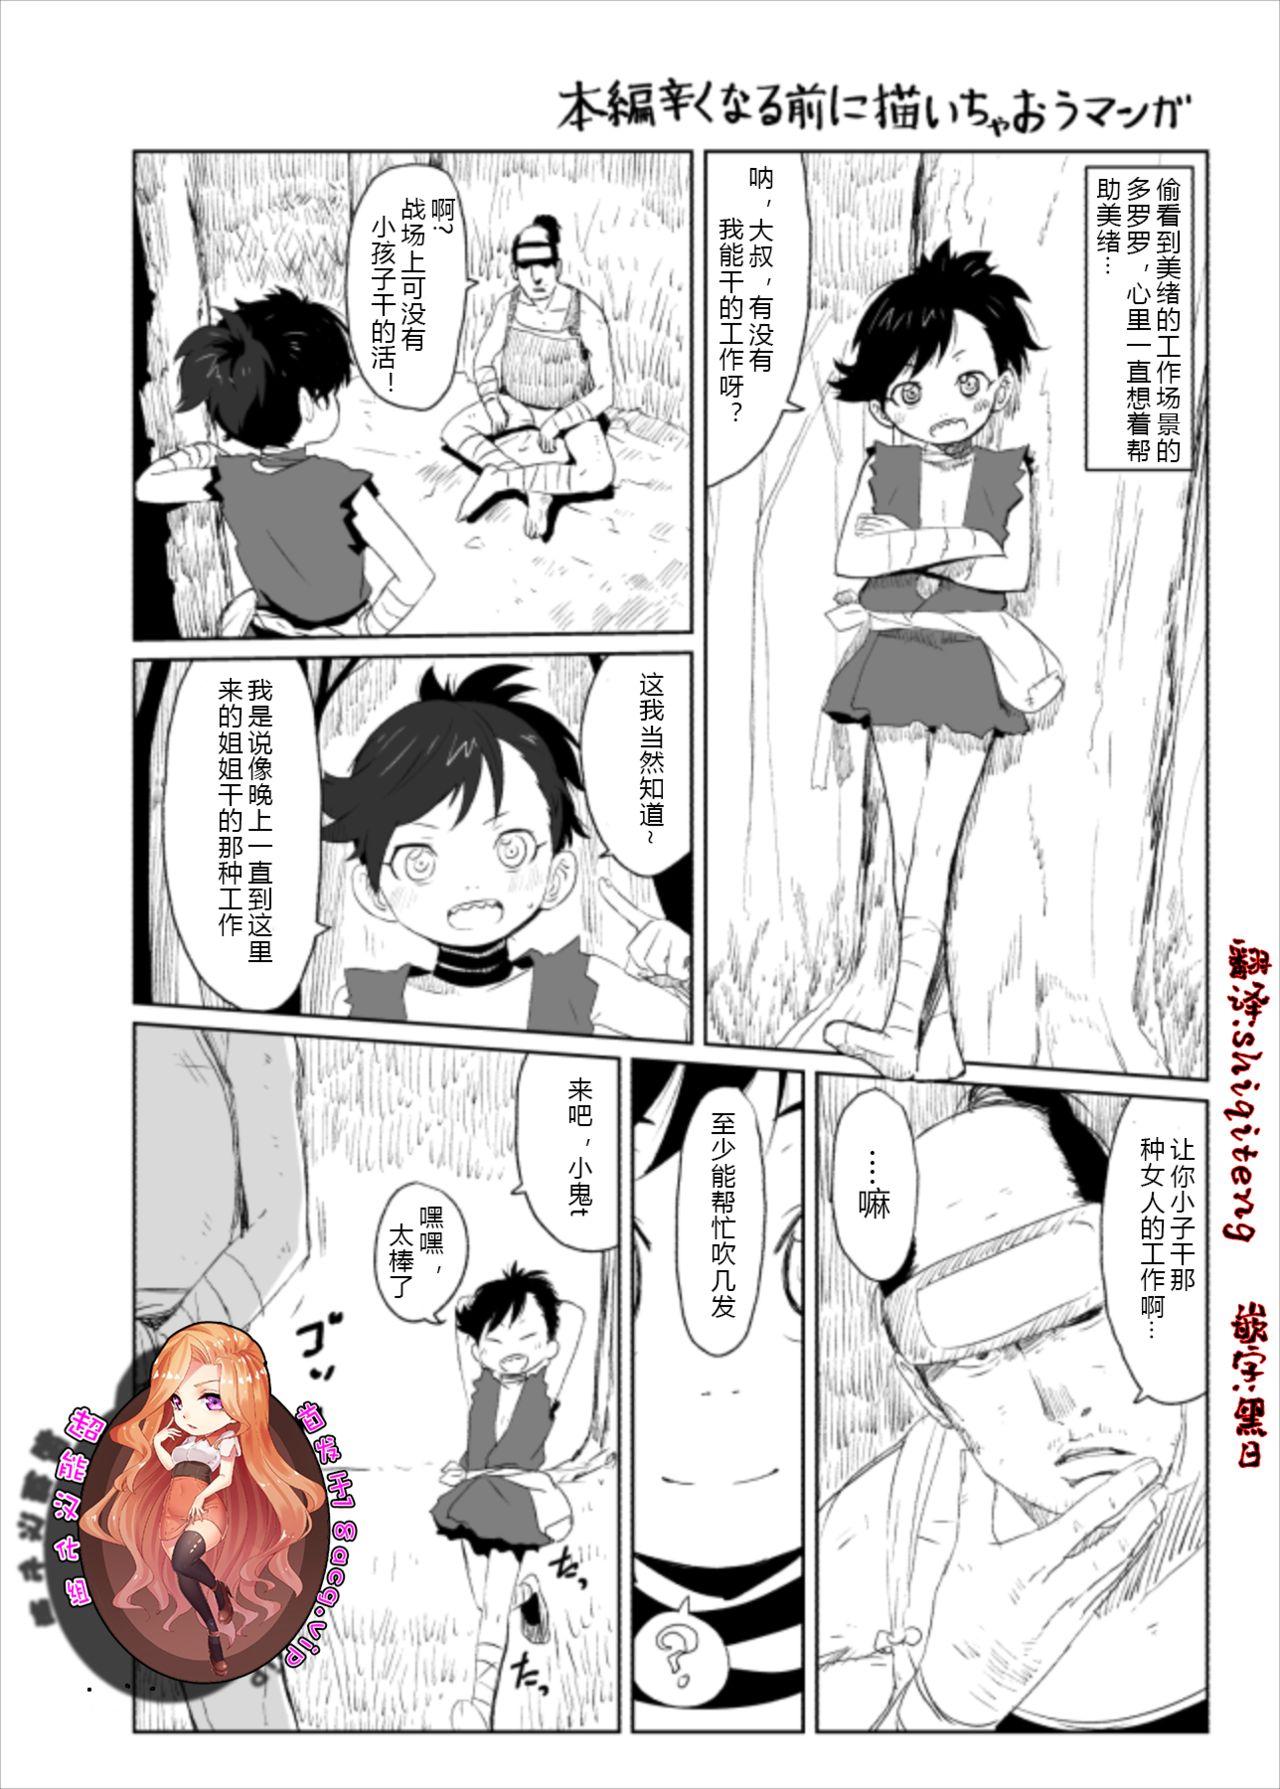 Sensual Dororo Rakugaki Echi Manga - Dororo Breeding - Picture 1